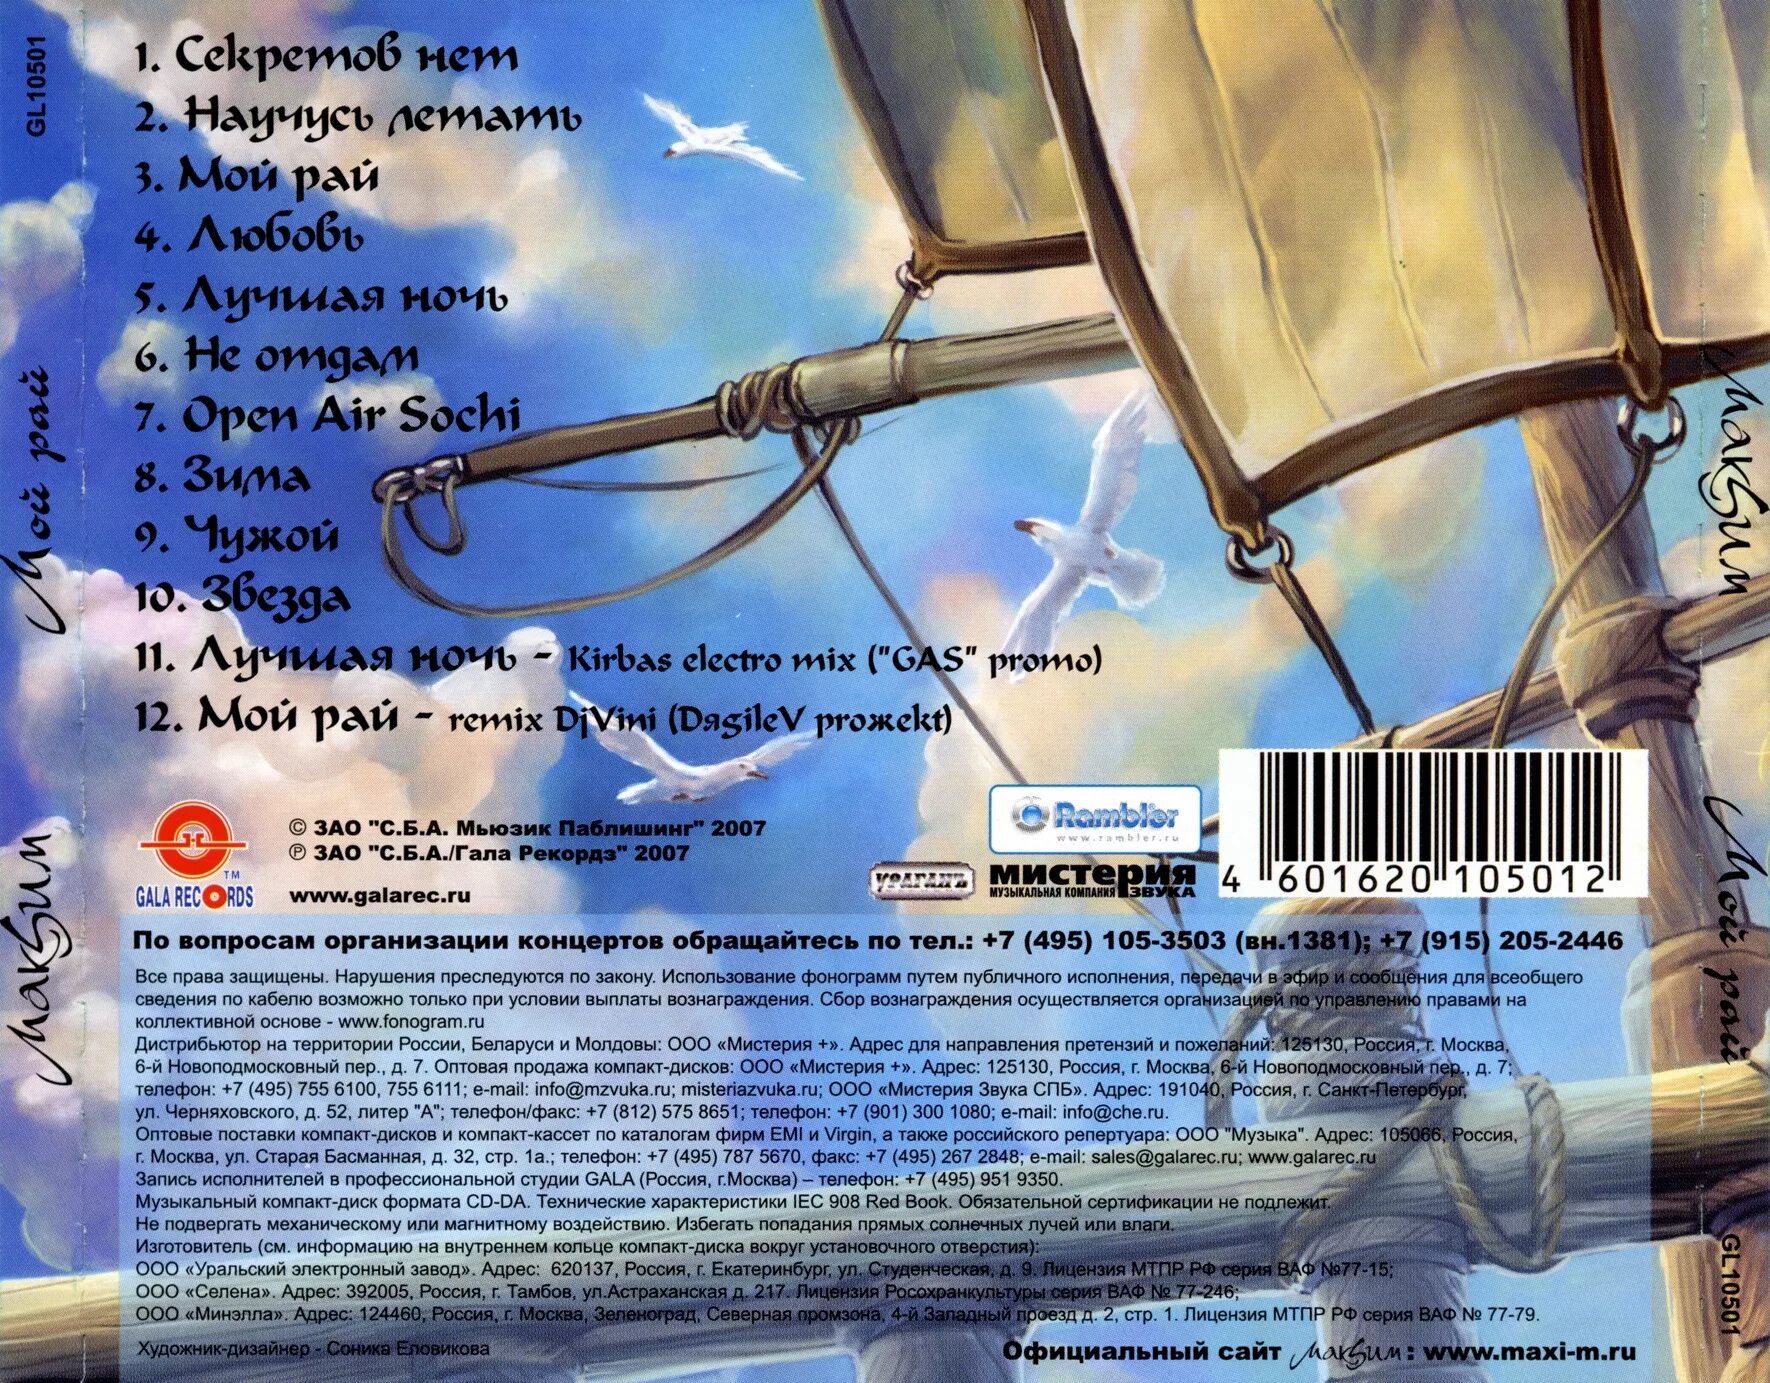 Альбом МАКSИМ - мой рай 2007. Джонни мой рай